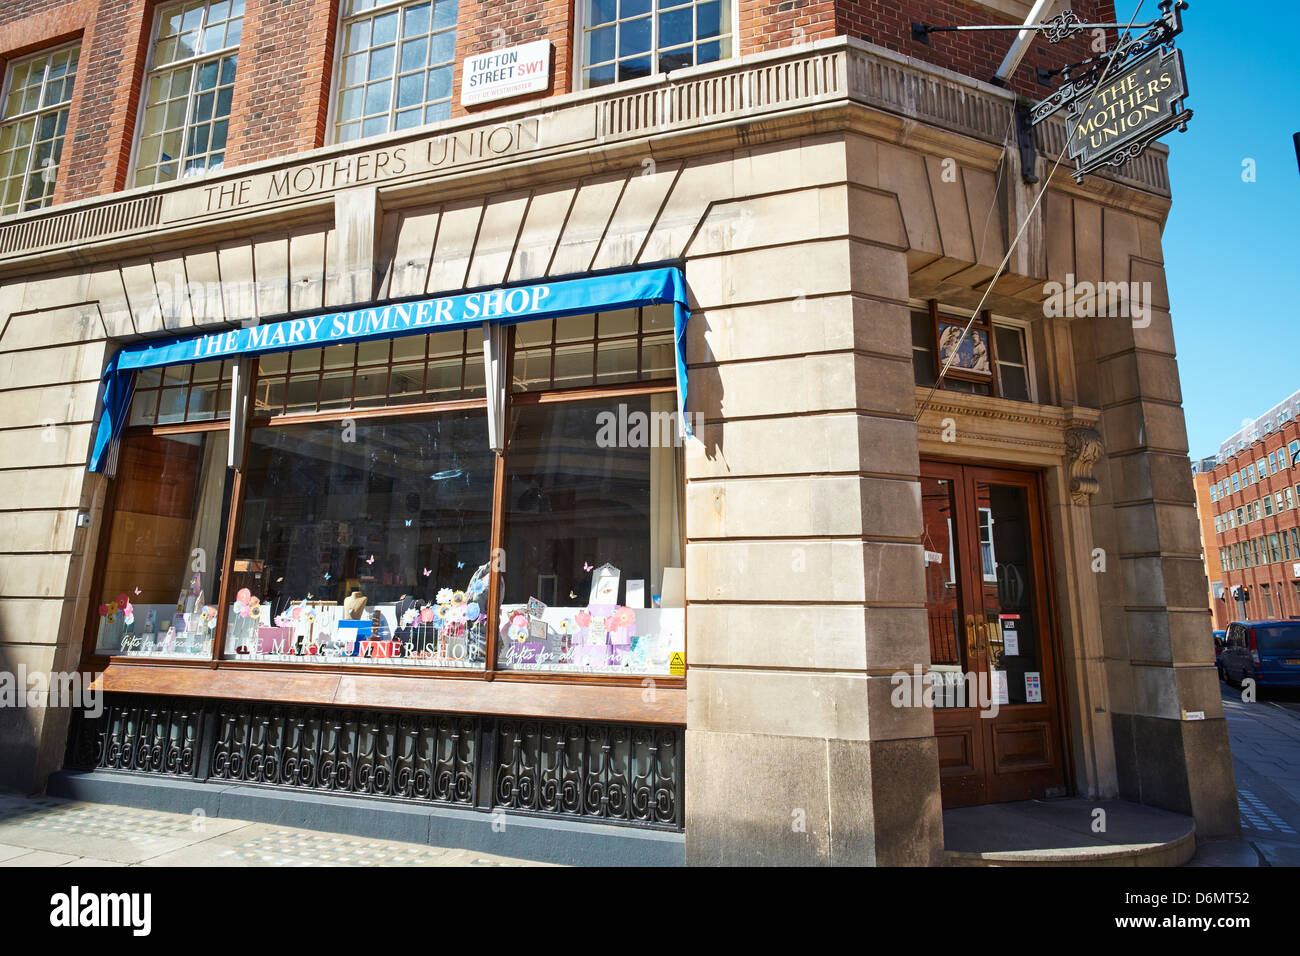 Die Mary Sumner Shop, der die Mütter Union Tufton Street Westminster London UK gründete Stockfoto